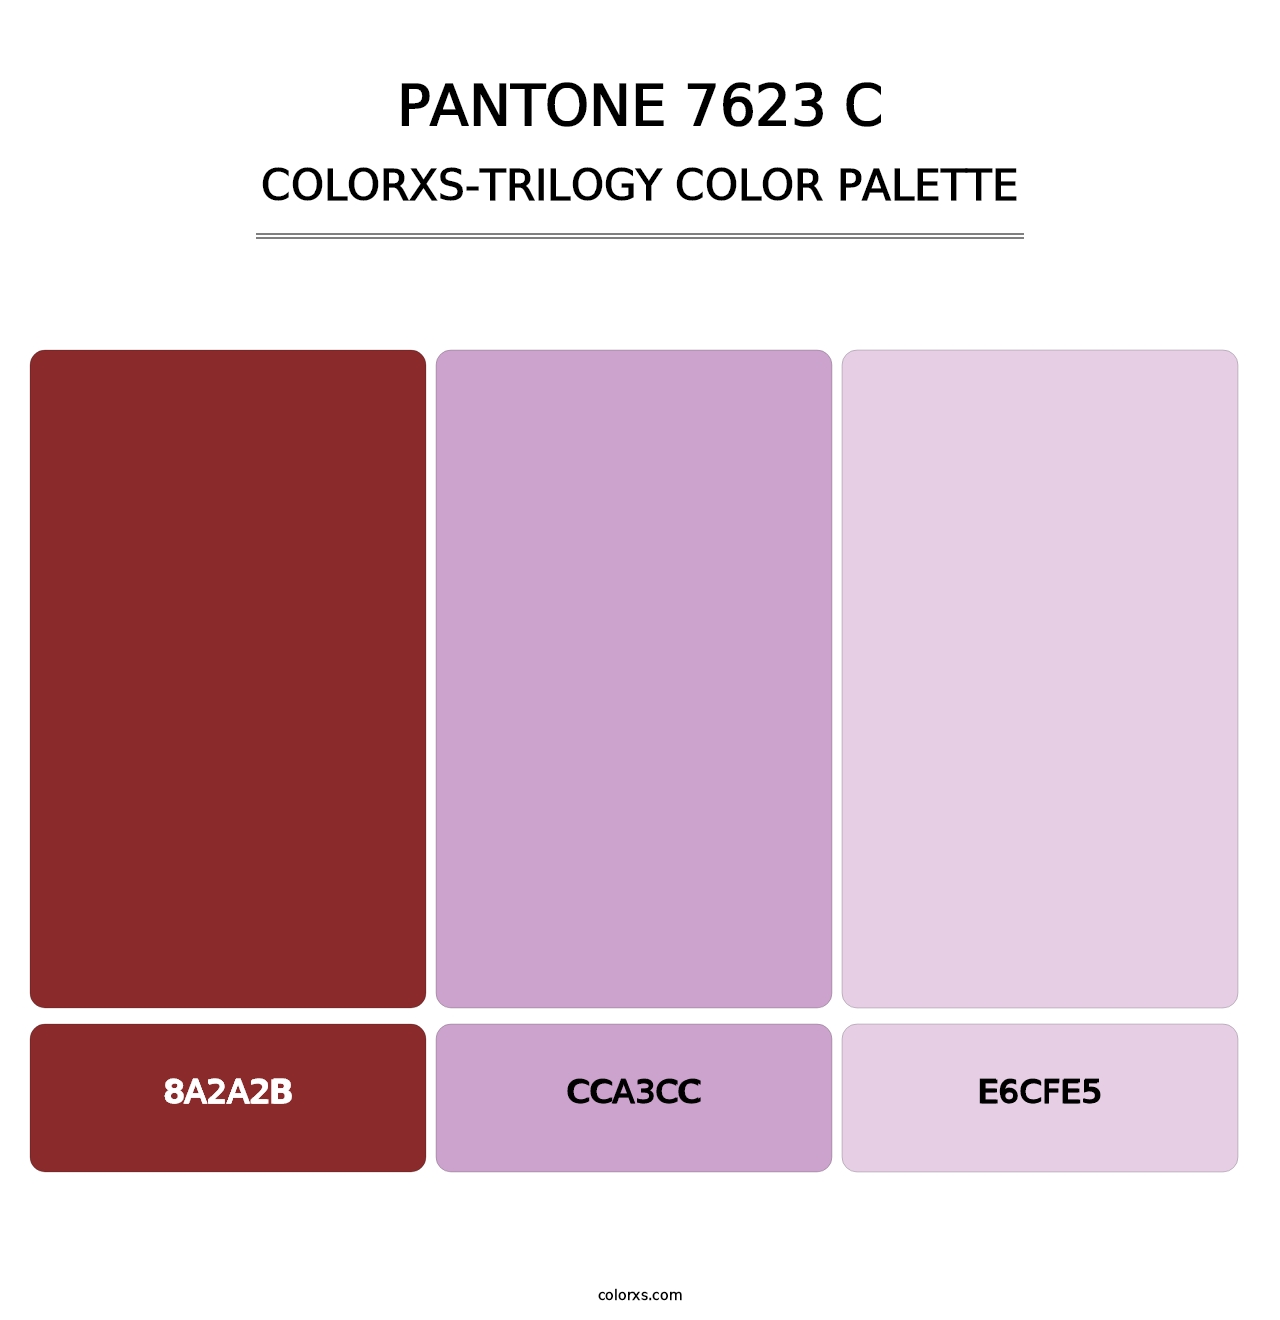 PANTONE 7623 C - Colorxs Trilogy Palette